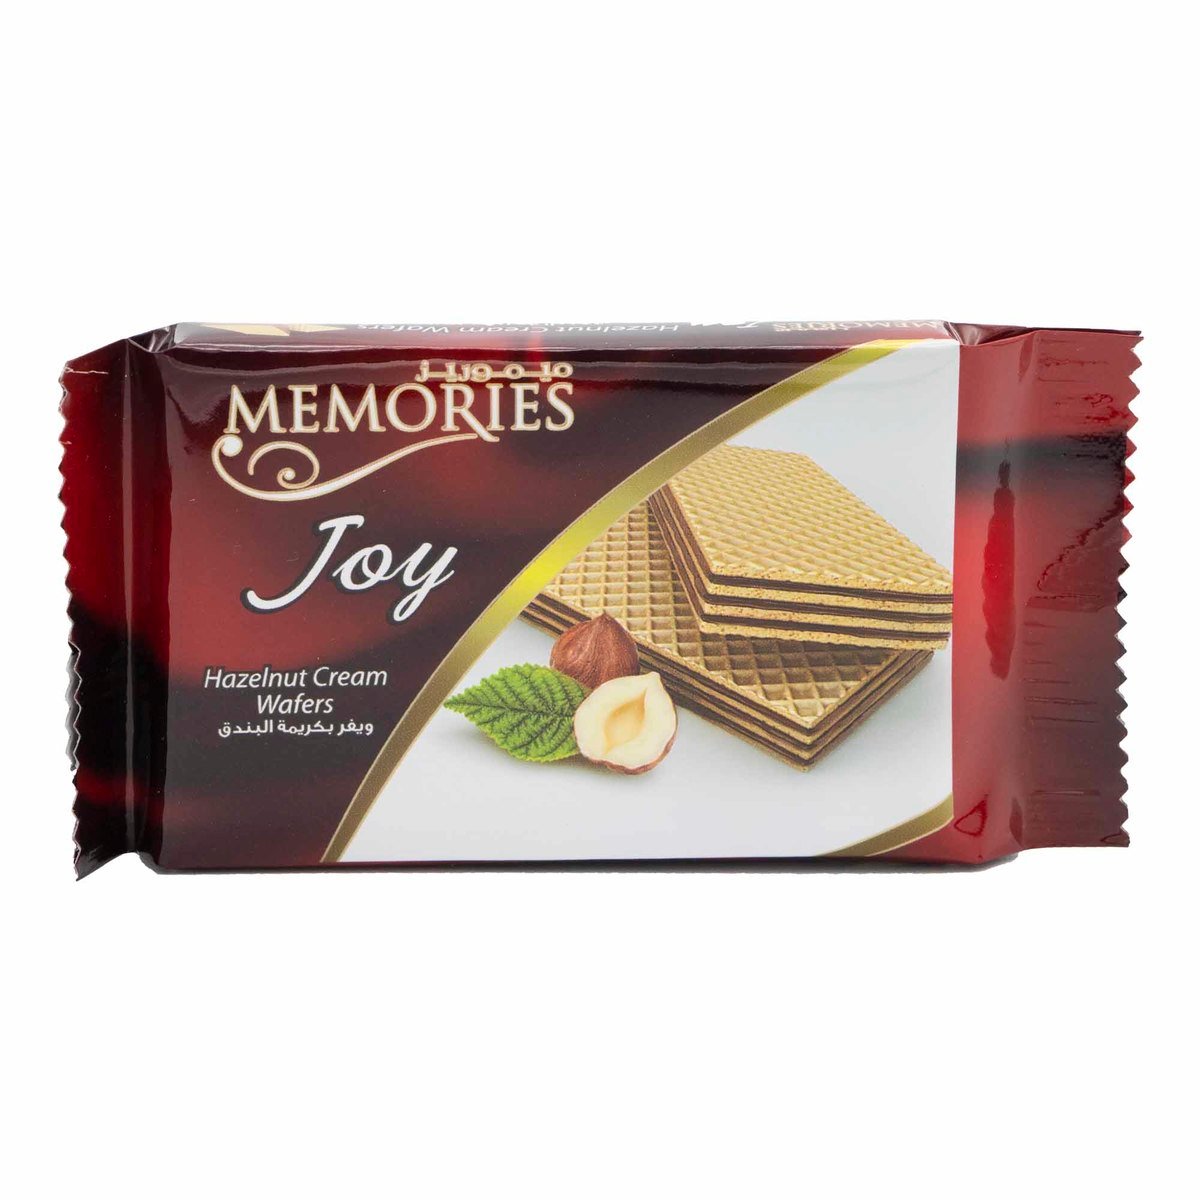 Memories Joy Hazelnut Cream Wafers 24 x 25g